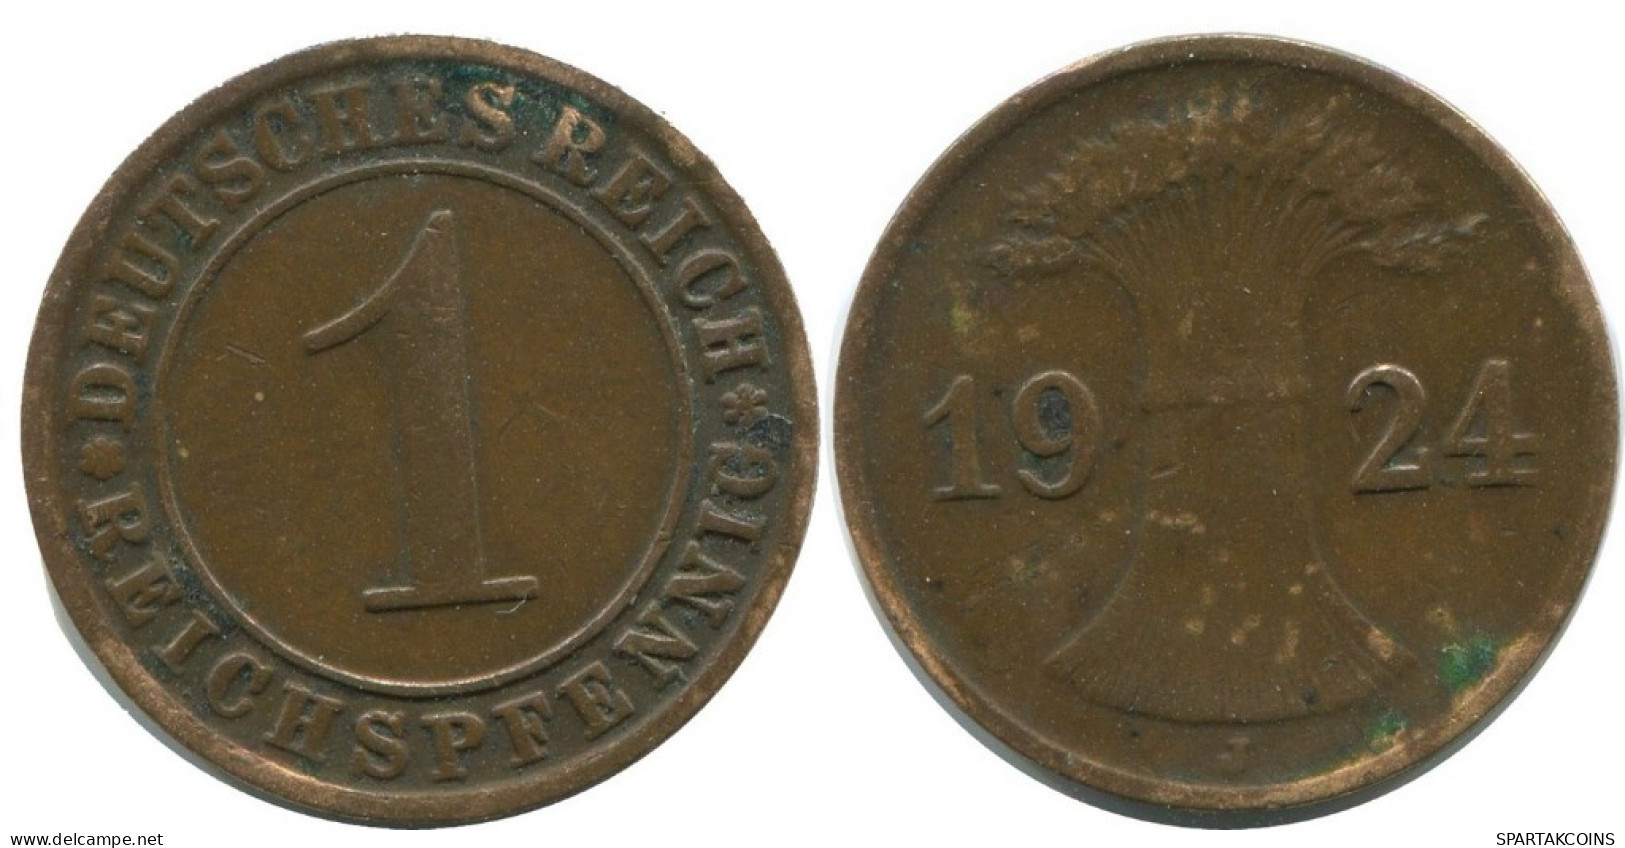 1 REICHSPFENNIG 1924 J DEUTSCHLAND Münze GERMANY #AD460.9.D.A - 1 Rentenpfennig & 1 Reichspfennig